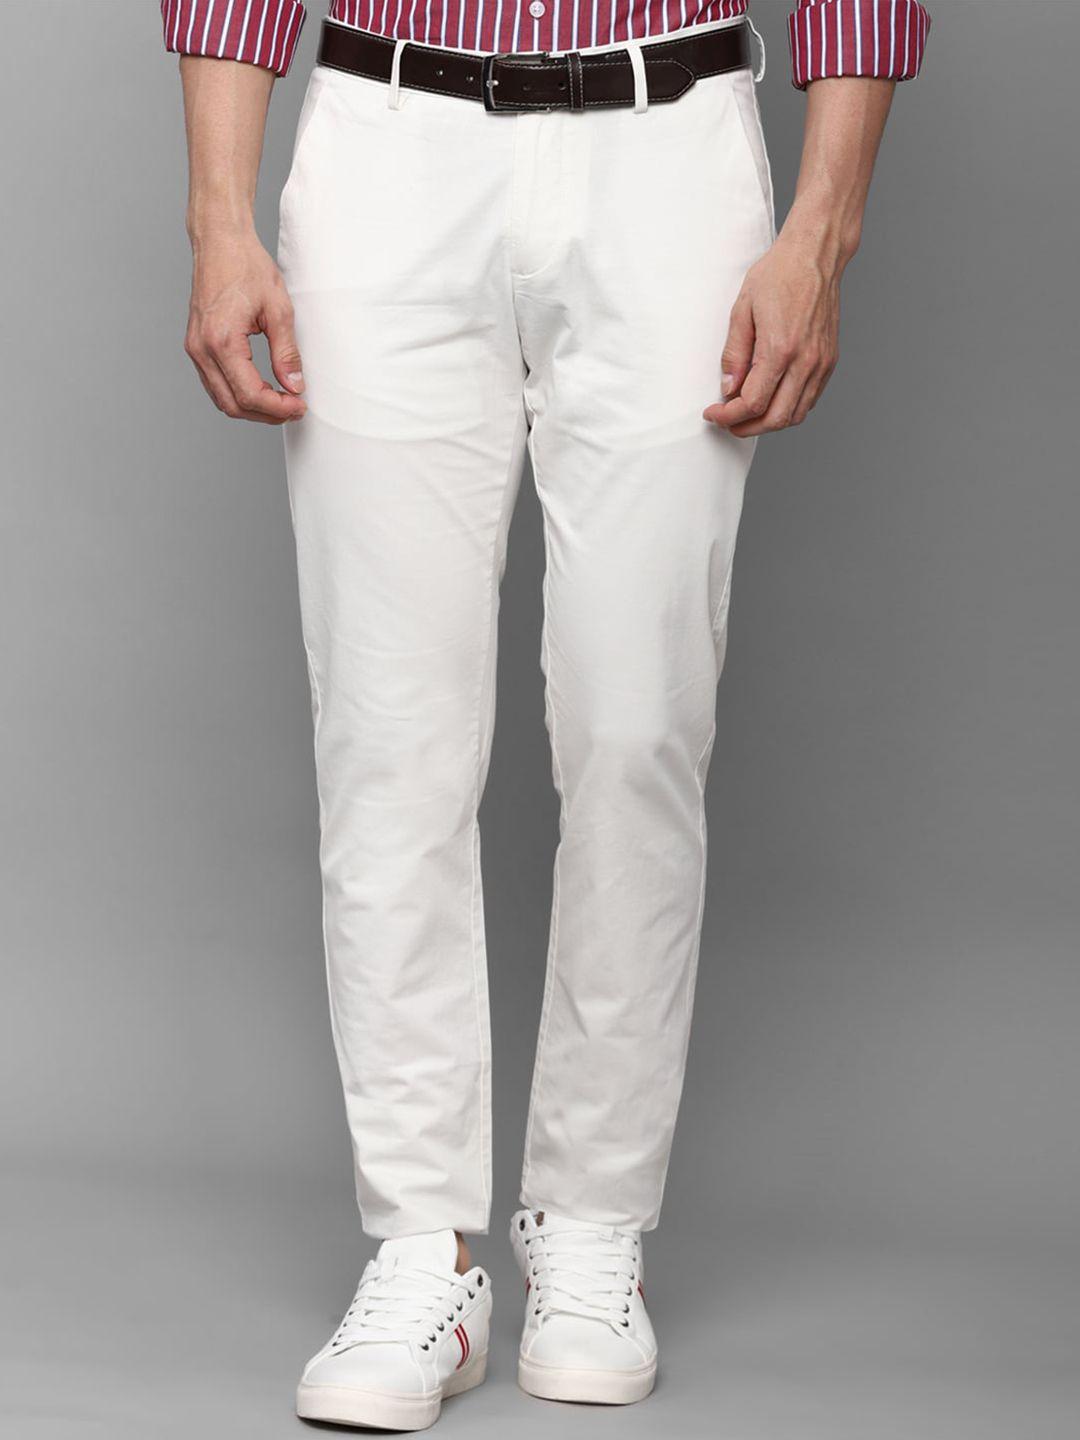 allen solly men white slim fit trouser